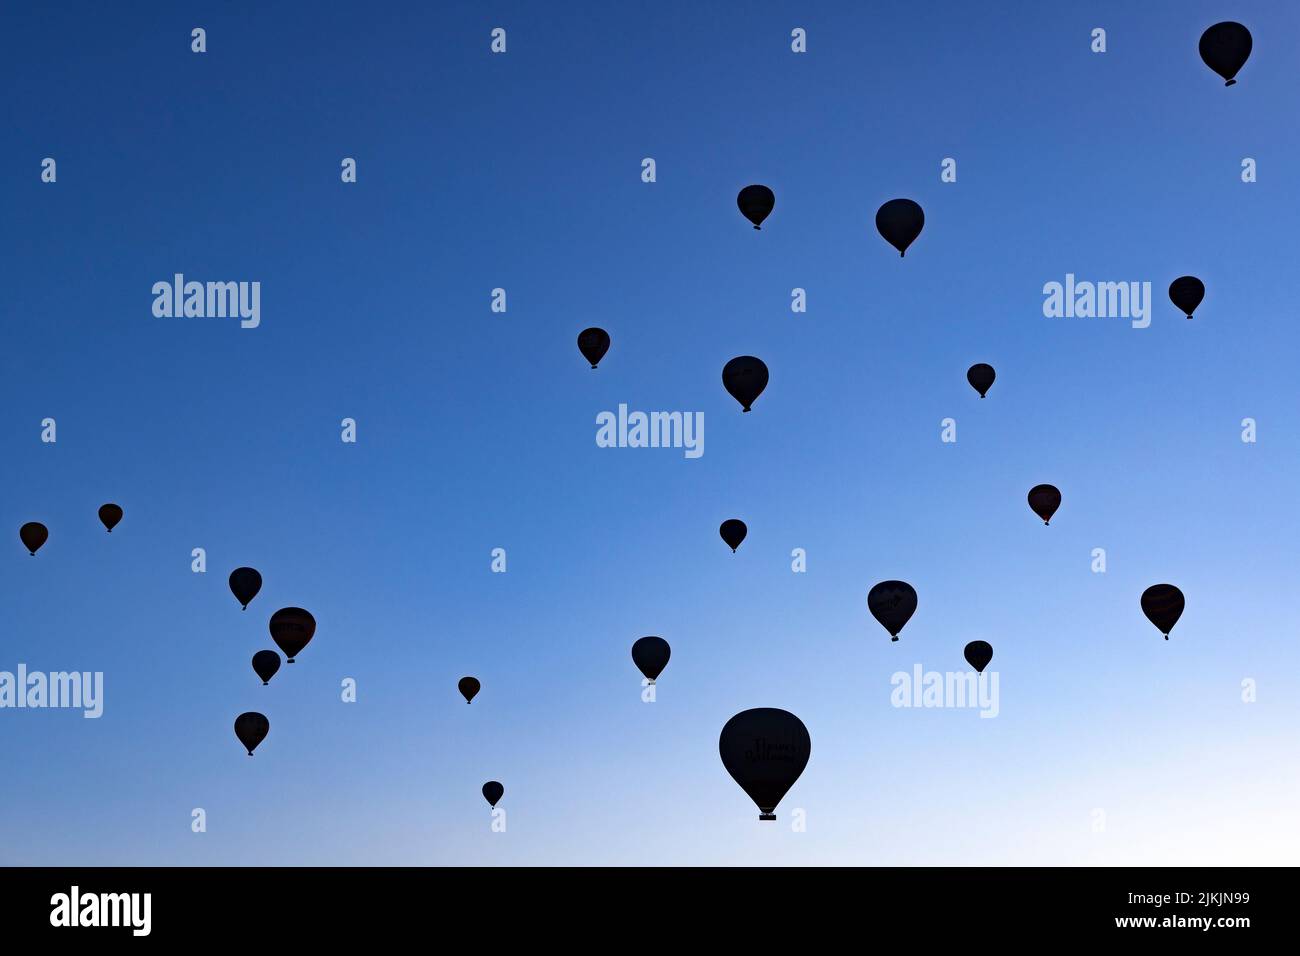 siluetas de globos de aire caliente que se elevan en el cielo azul Foto de stock